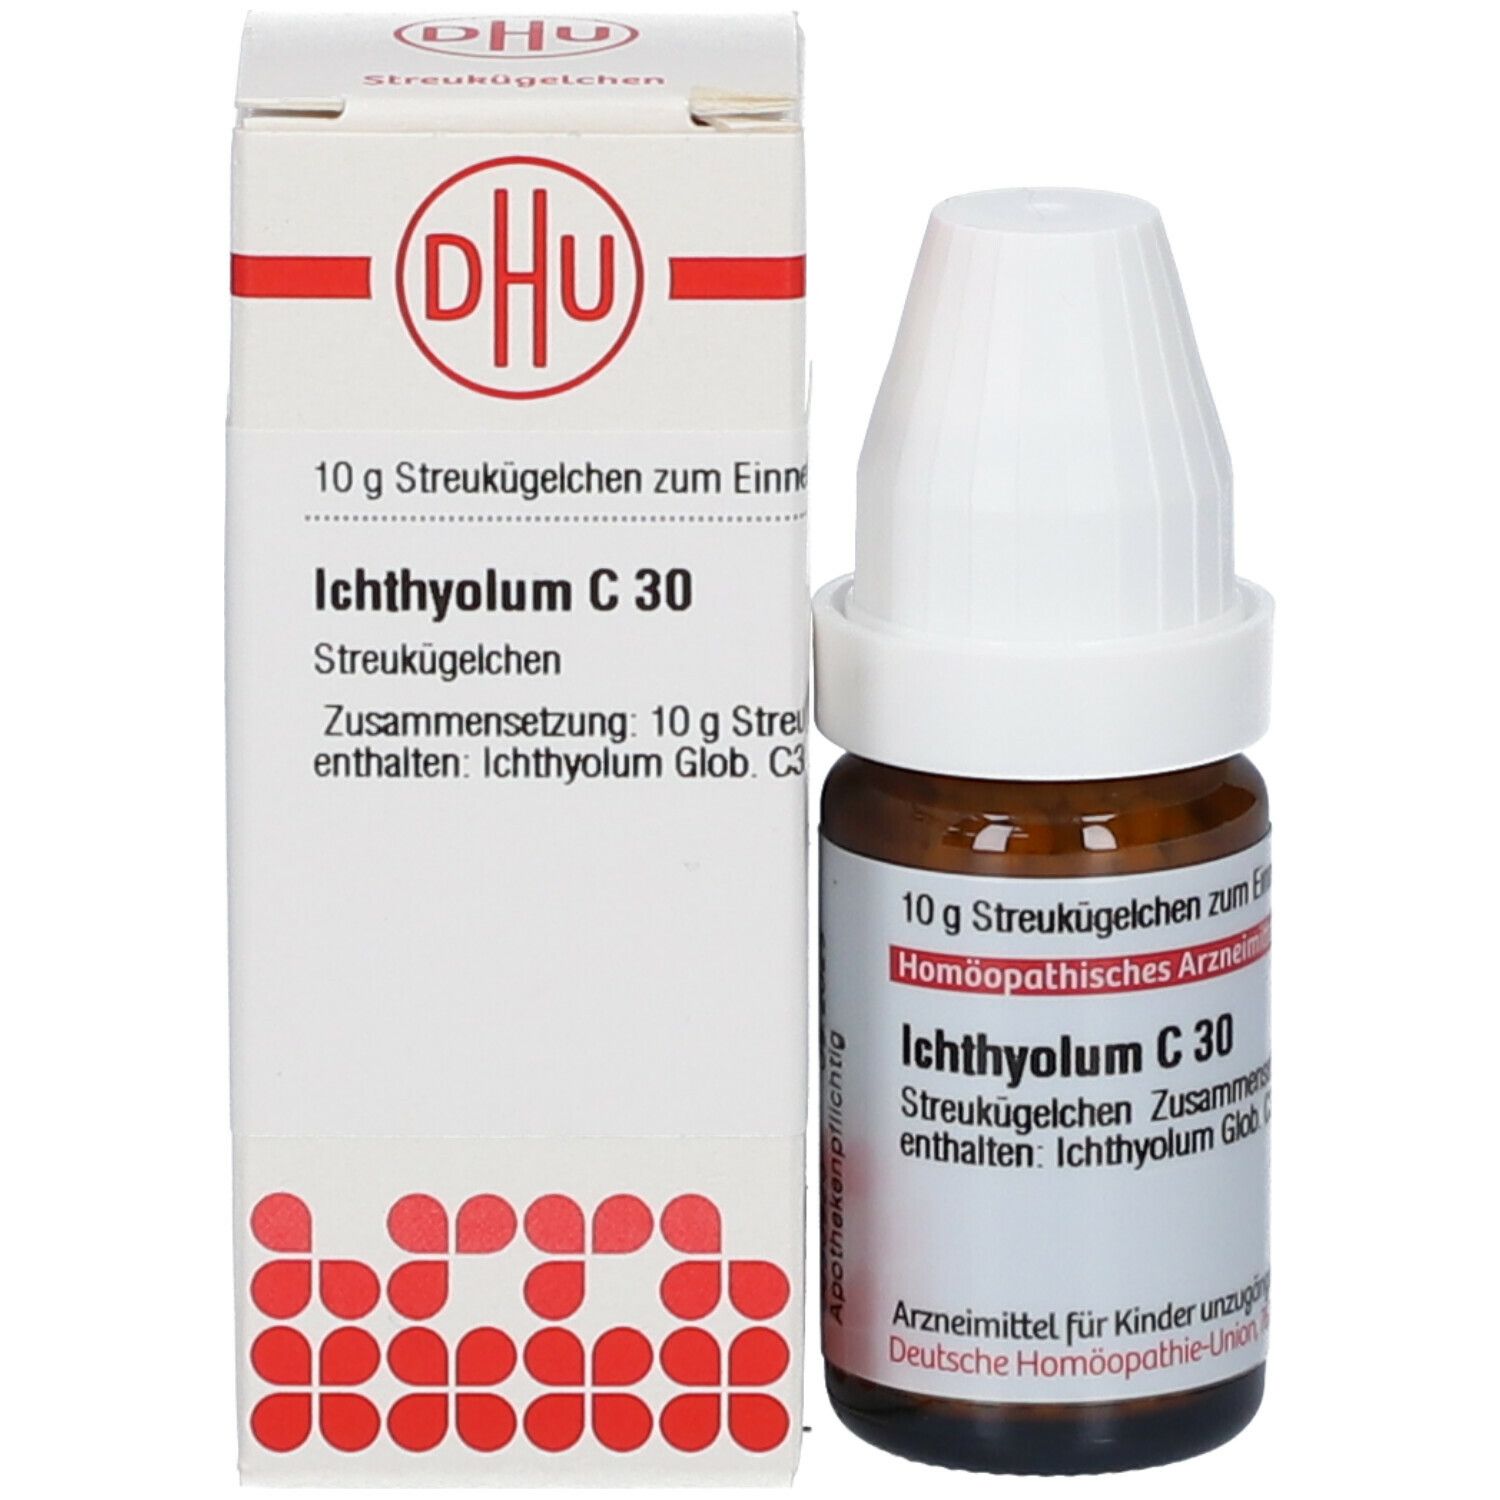 DHU Ichthyolum C30